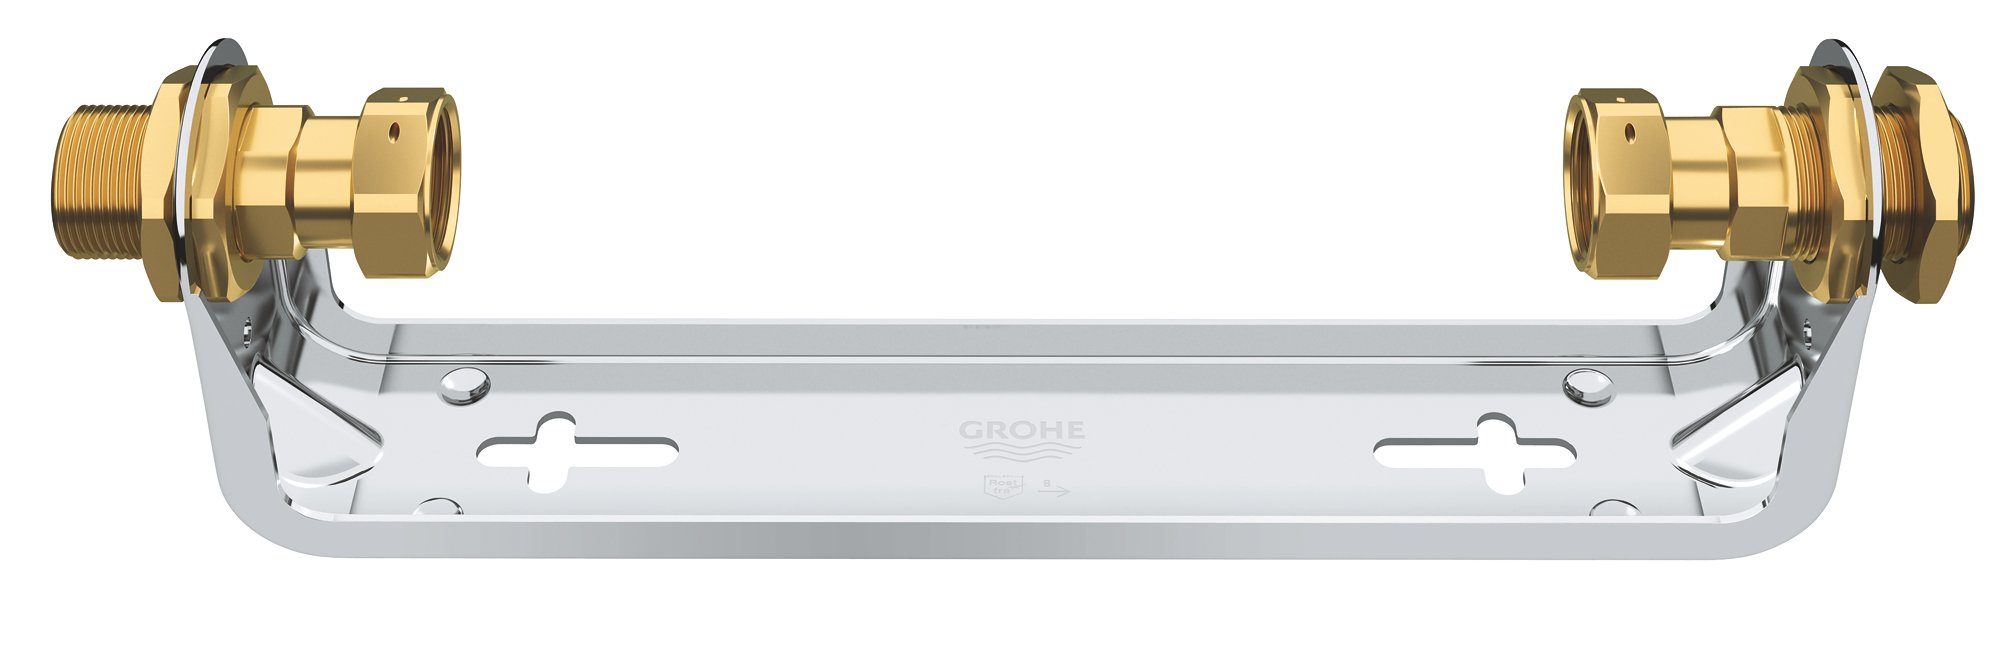 GROHE GROHE Sense Guard - Wandmontage-Set (passend zu 22 500 LN0, 22 502 LN1), 22501000